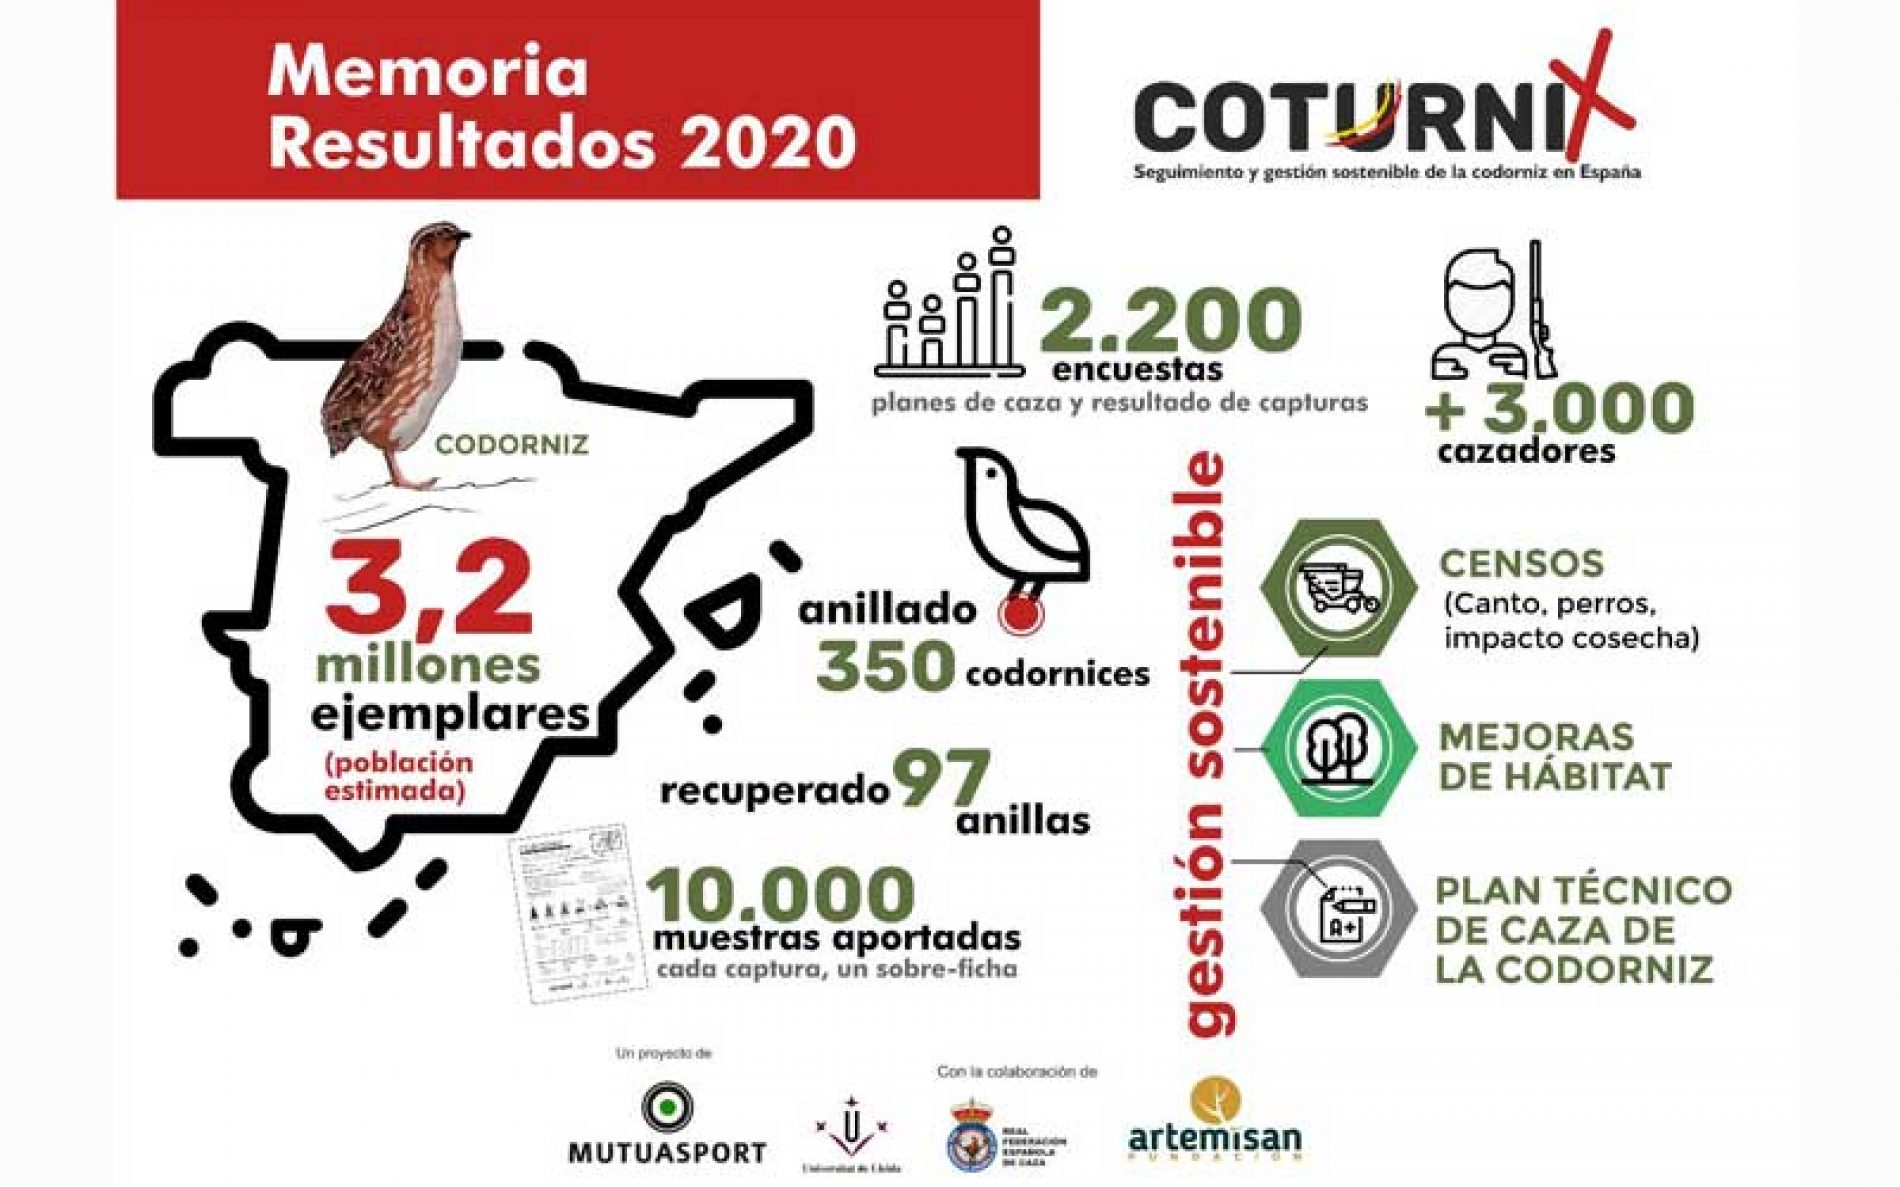 La codorniz mantiene un buen nivel de abundancia en España, con una estimación de 3,2 millones de ejemplares